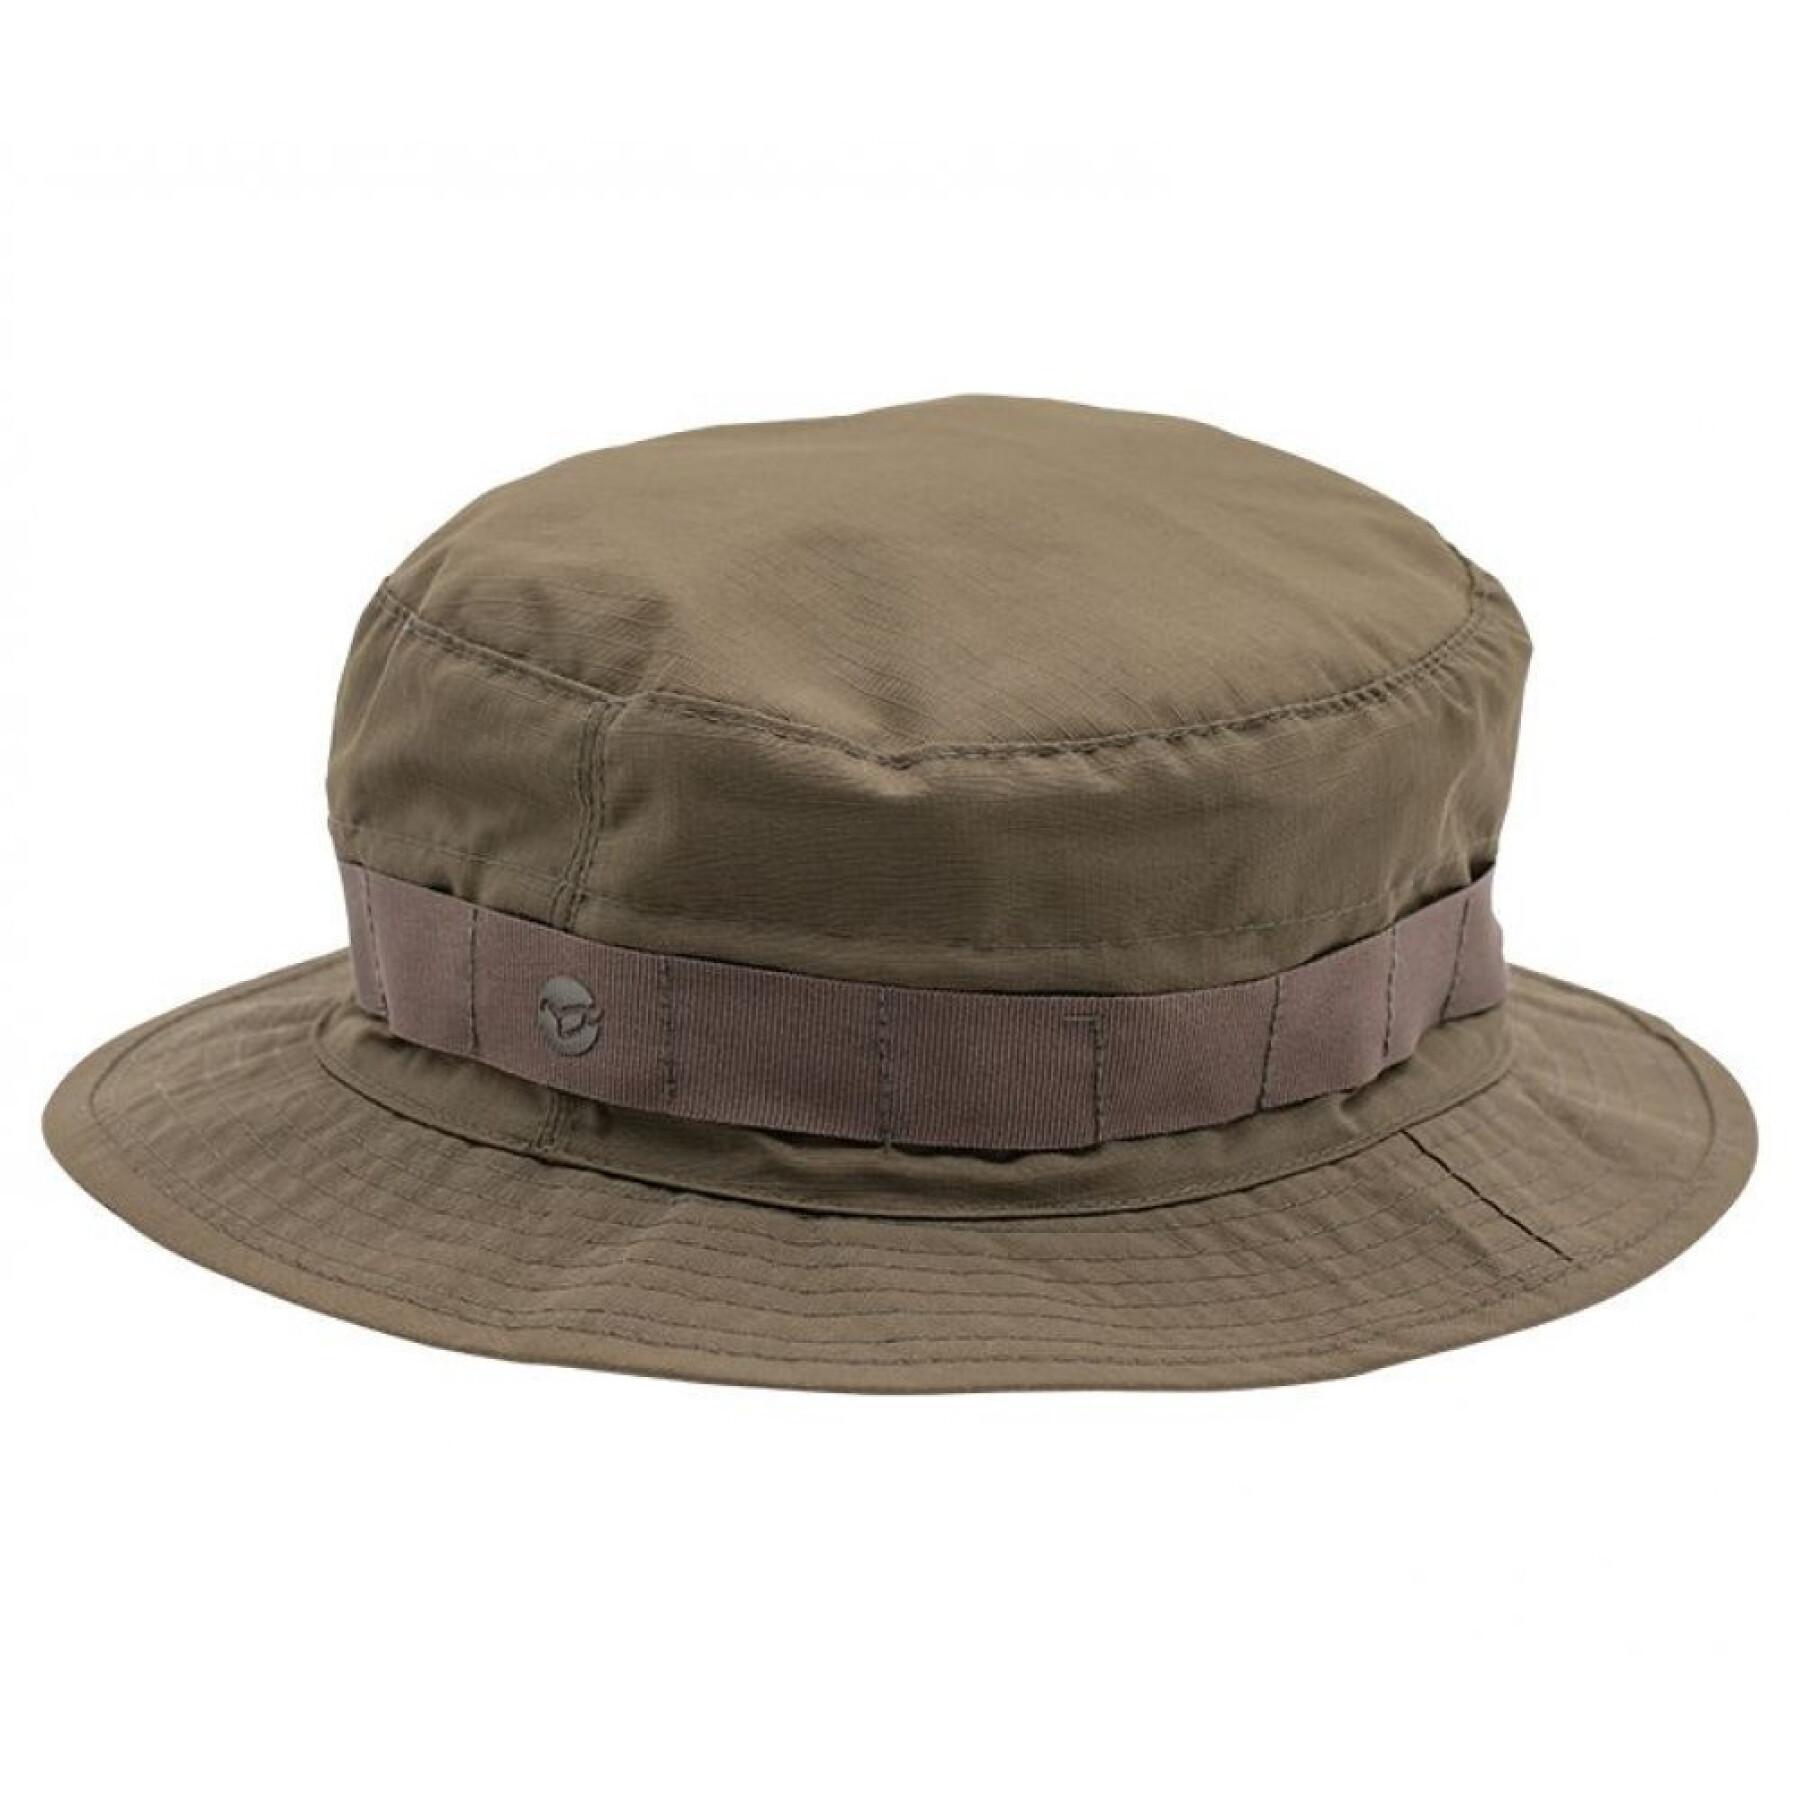 Pack of 6 waterproof hats Korda kore fleece